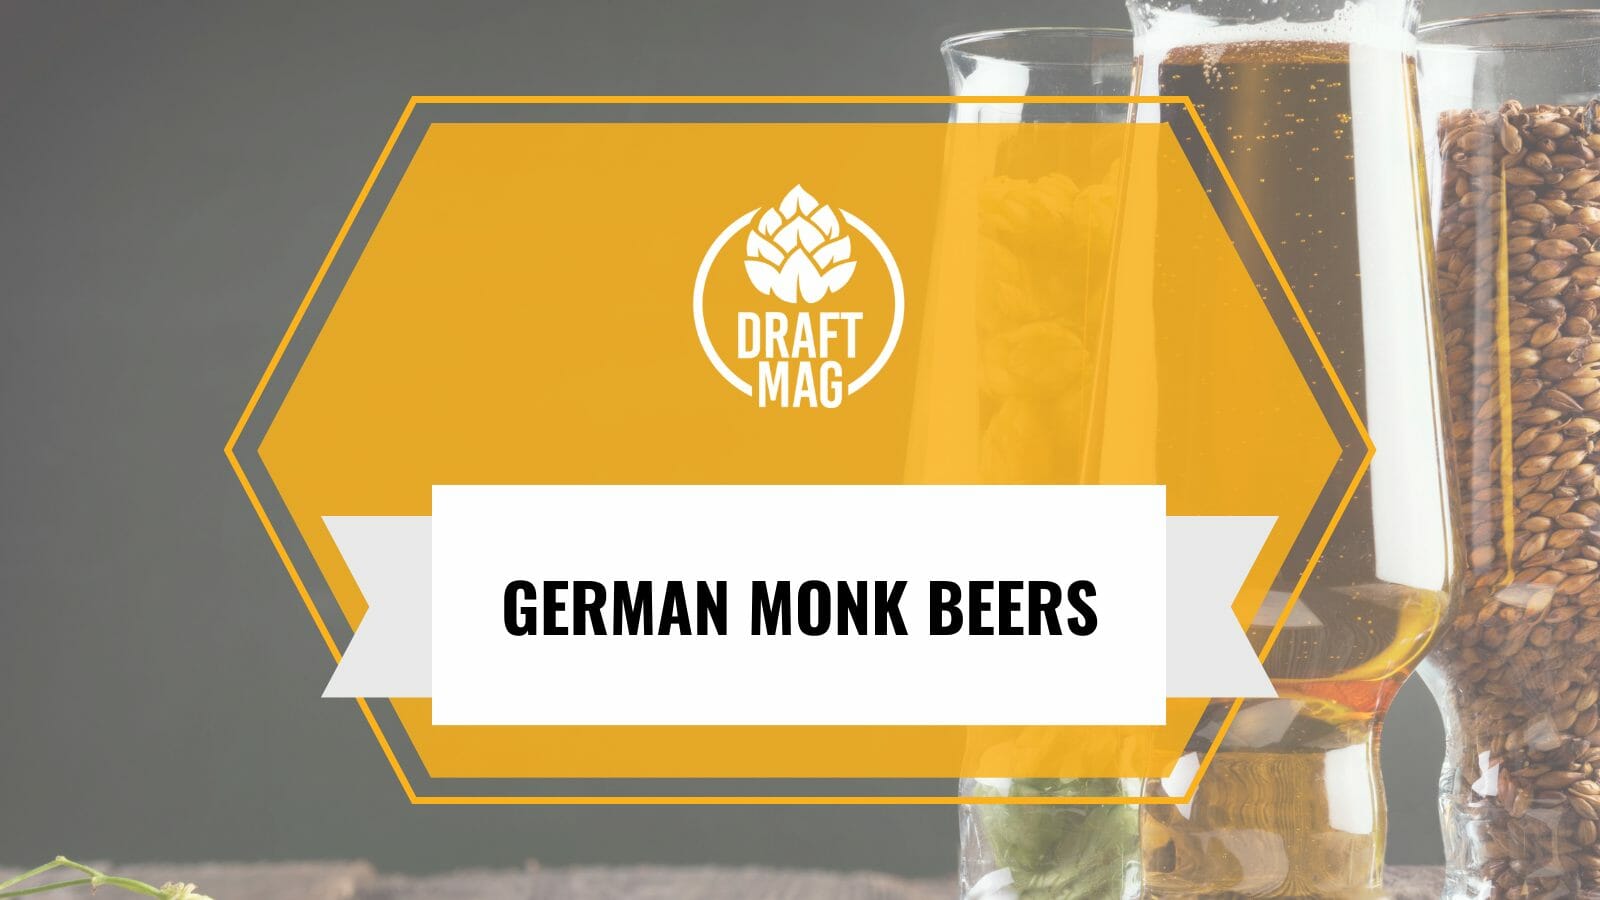 German monk beer